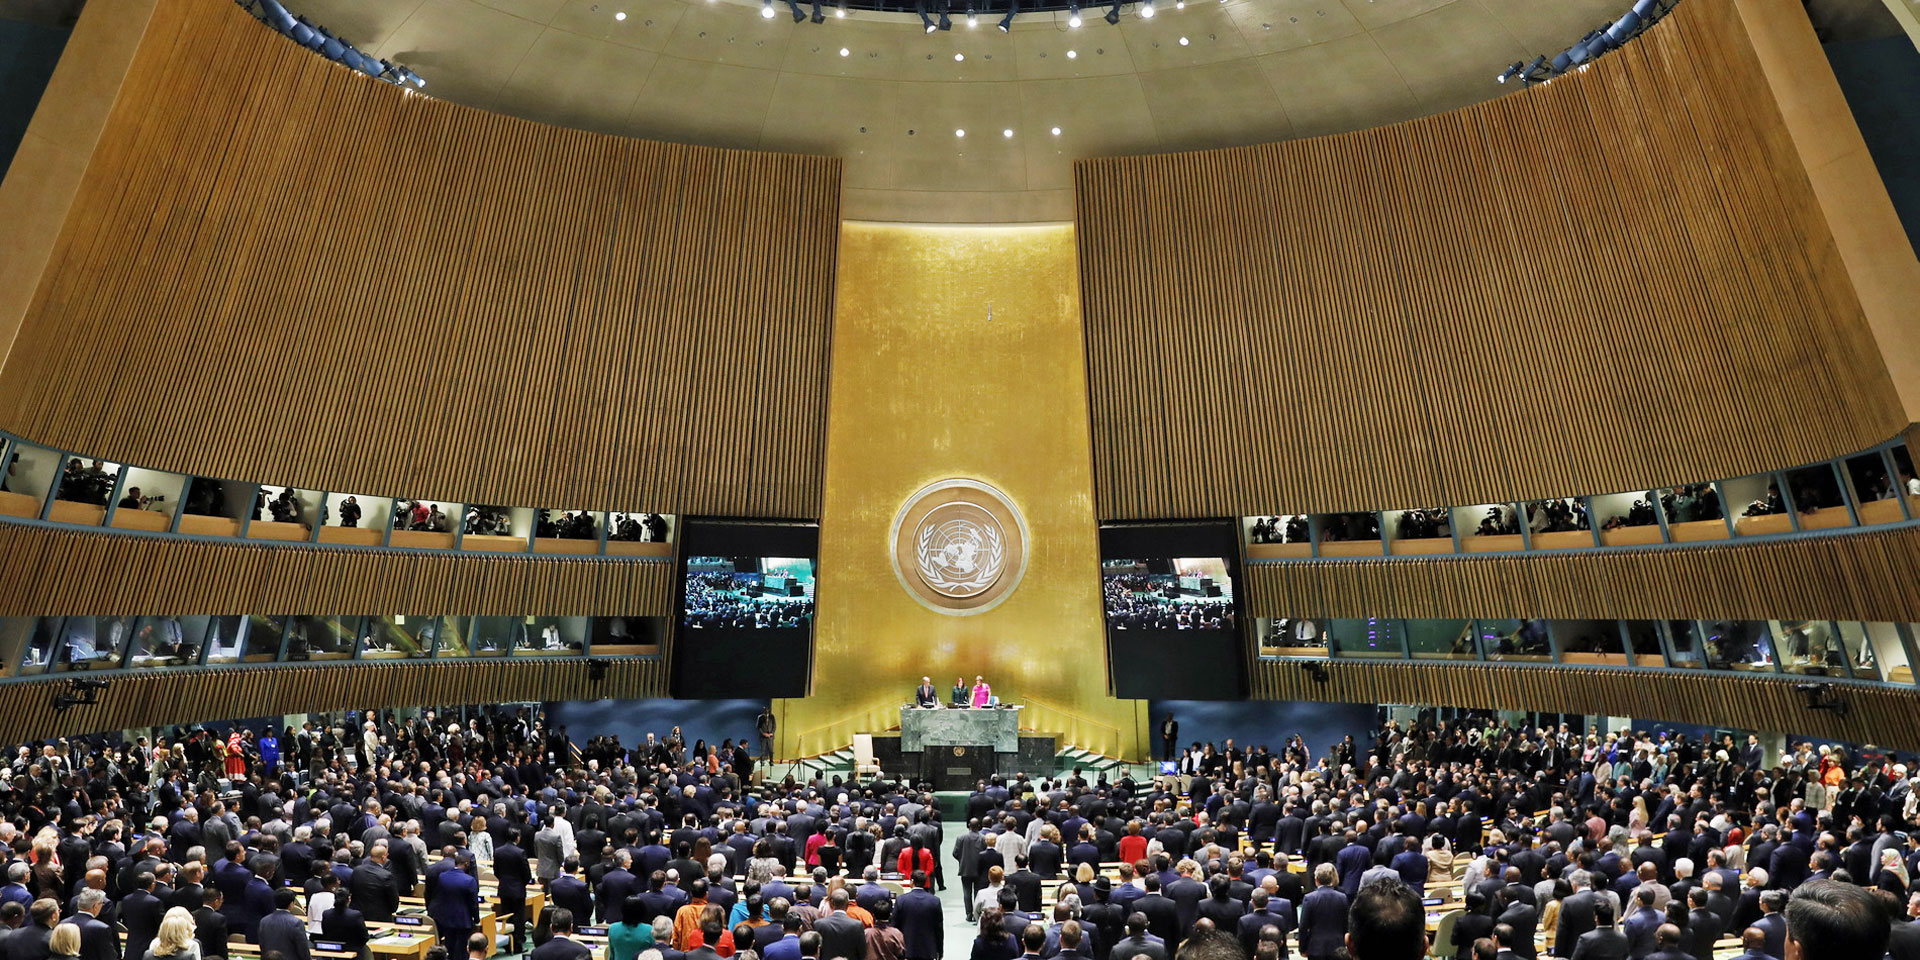 Aufnahme des Saals der UNO-Generalversammlung in welchem sich zahlreiche Menschen befinden.